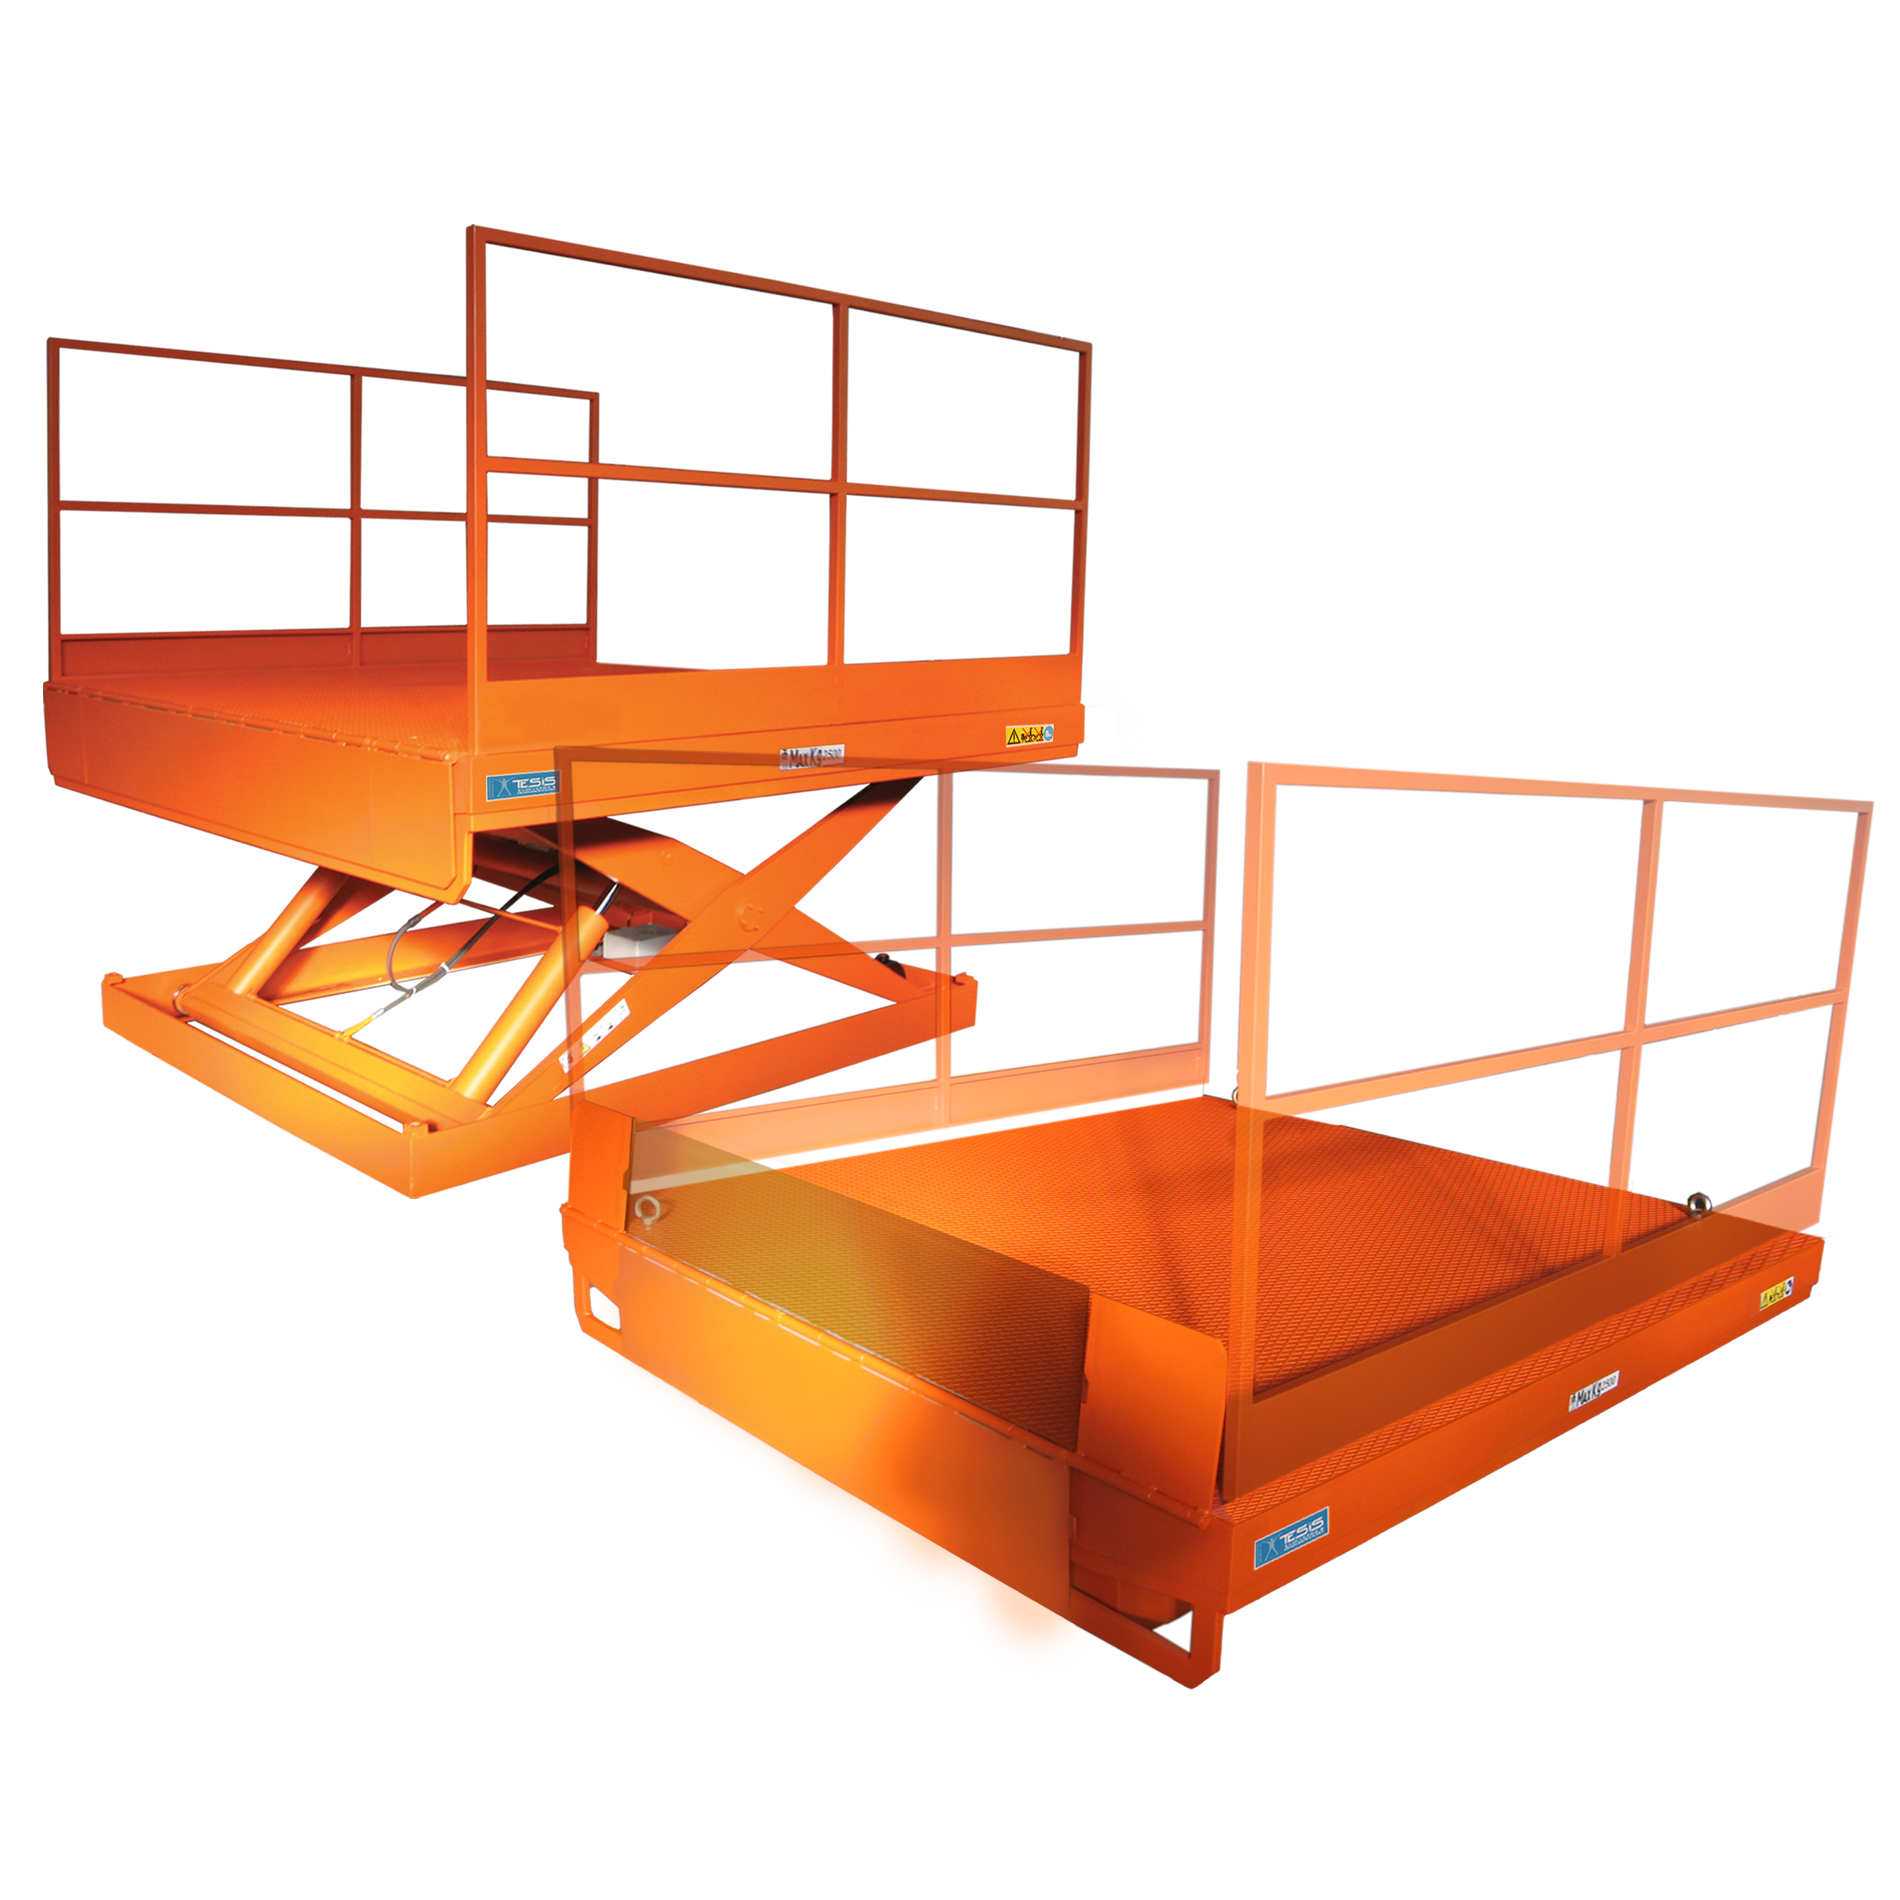 Piattaforma di sollevamento per carico e scarico camion con sponda di raccordo mobile manuale  e parapetti aspotabili, tavole elevatrici per carico automezzi